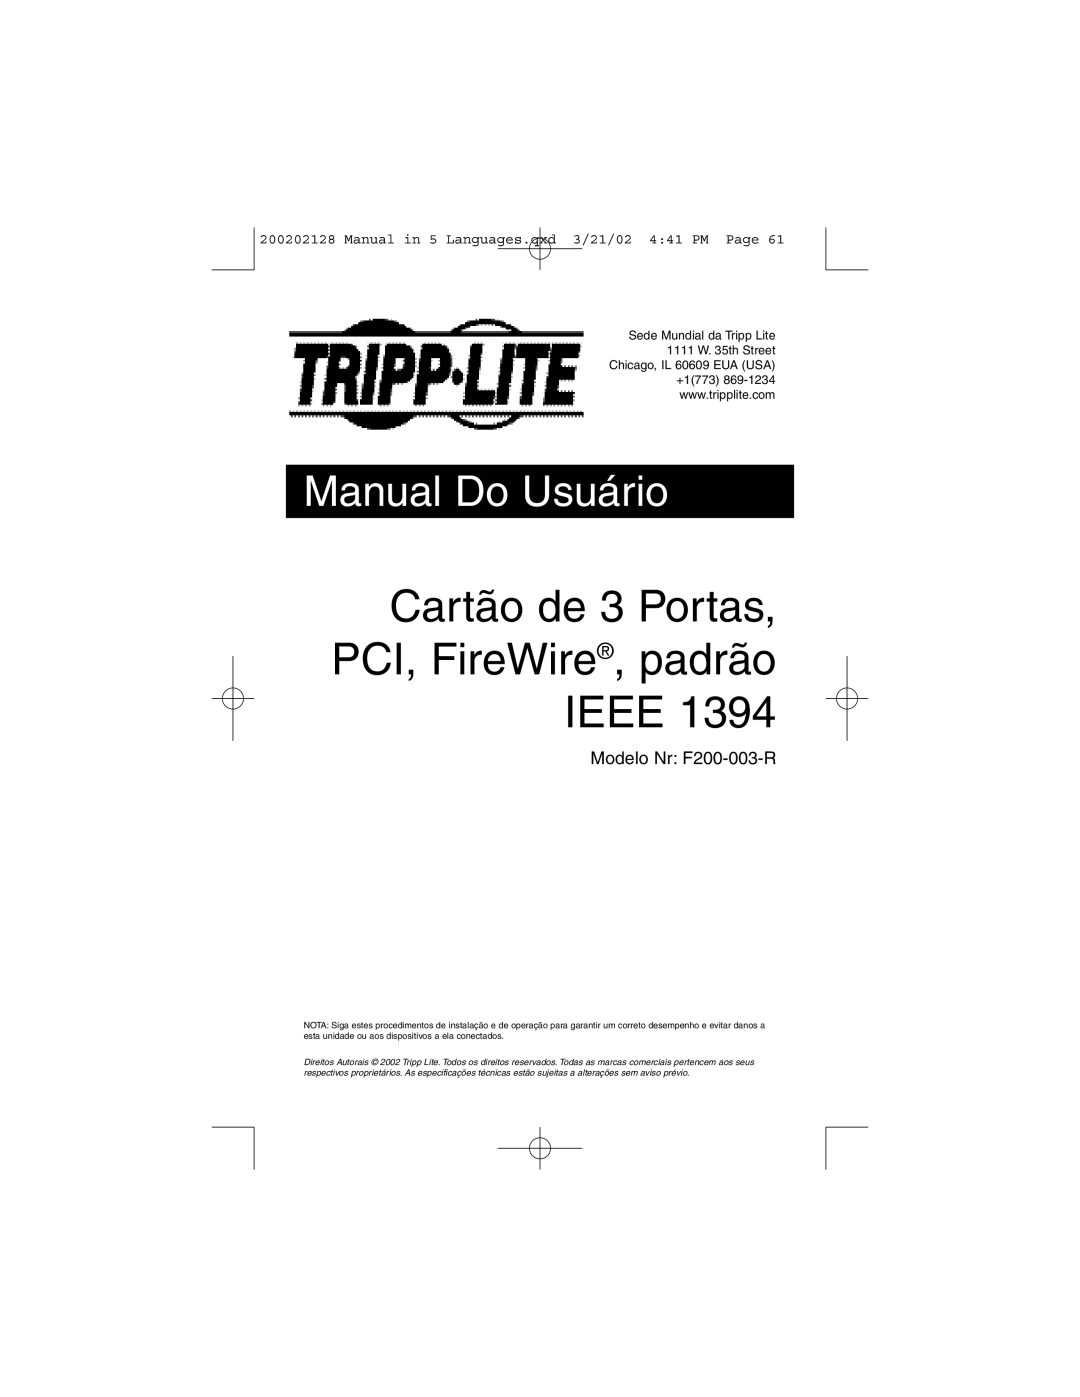 Tripp Lite F200-003-R user manual Cartão de 3 Portas, PCI, FireWire, padrão IEEE, Manual Do Usuário 